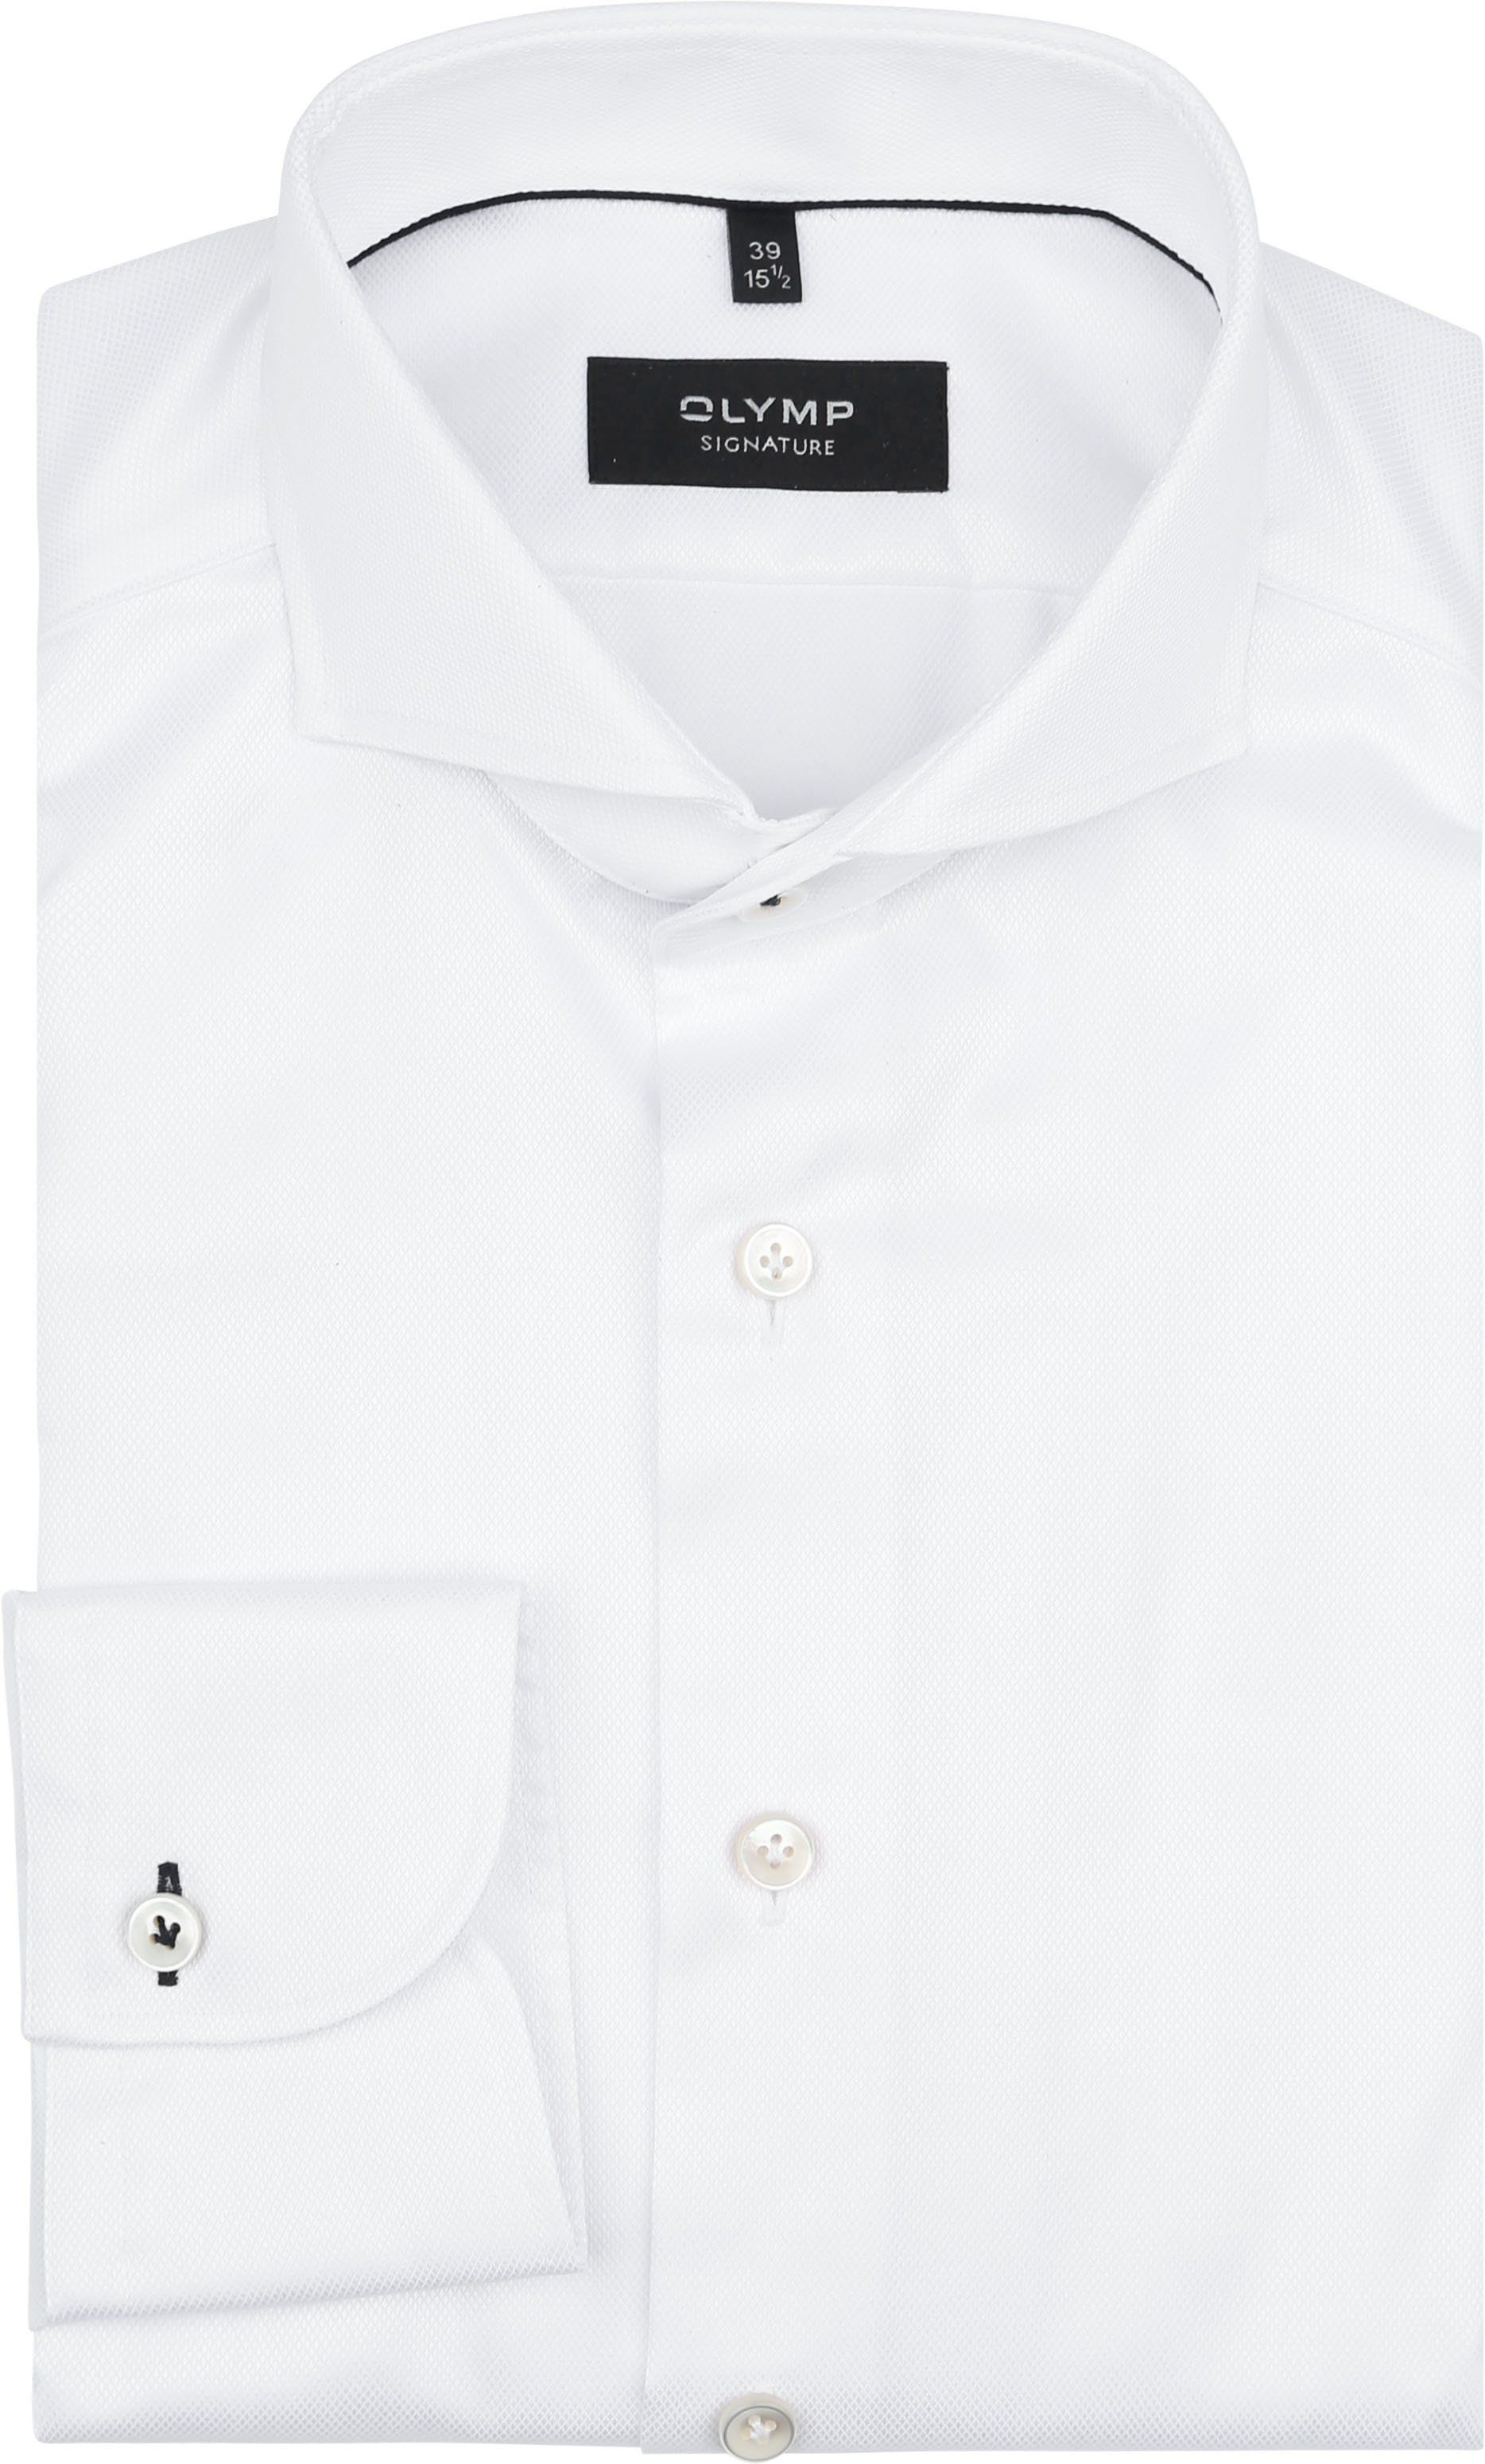 Olymp Signature Shirt White size 46 product